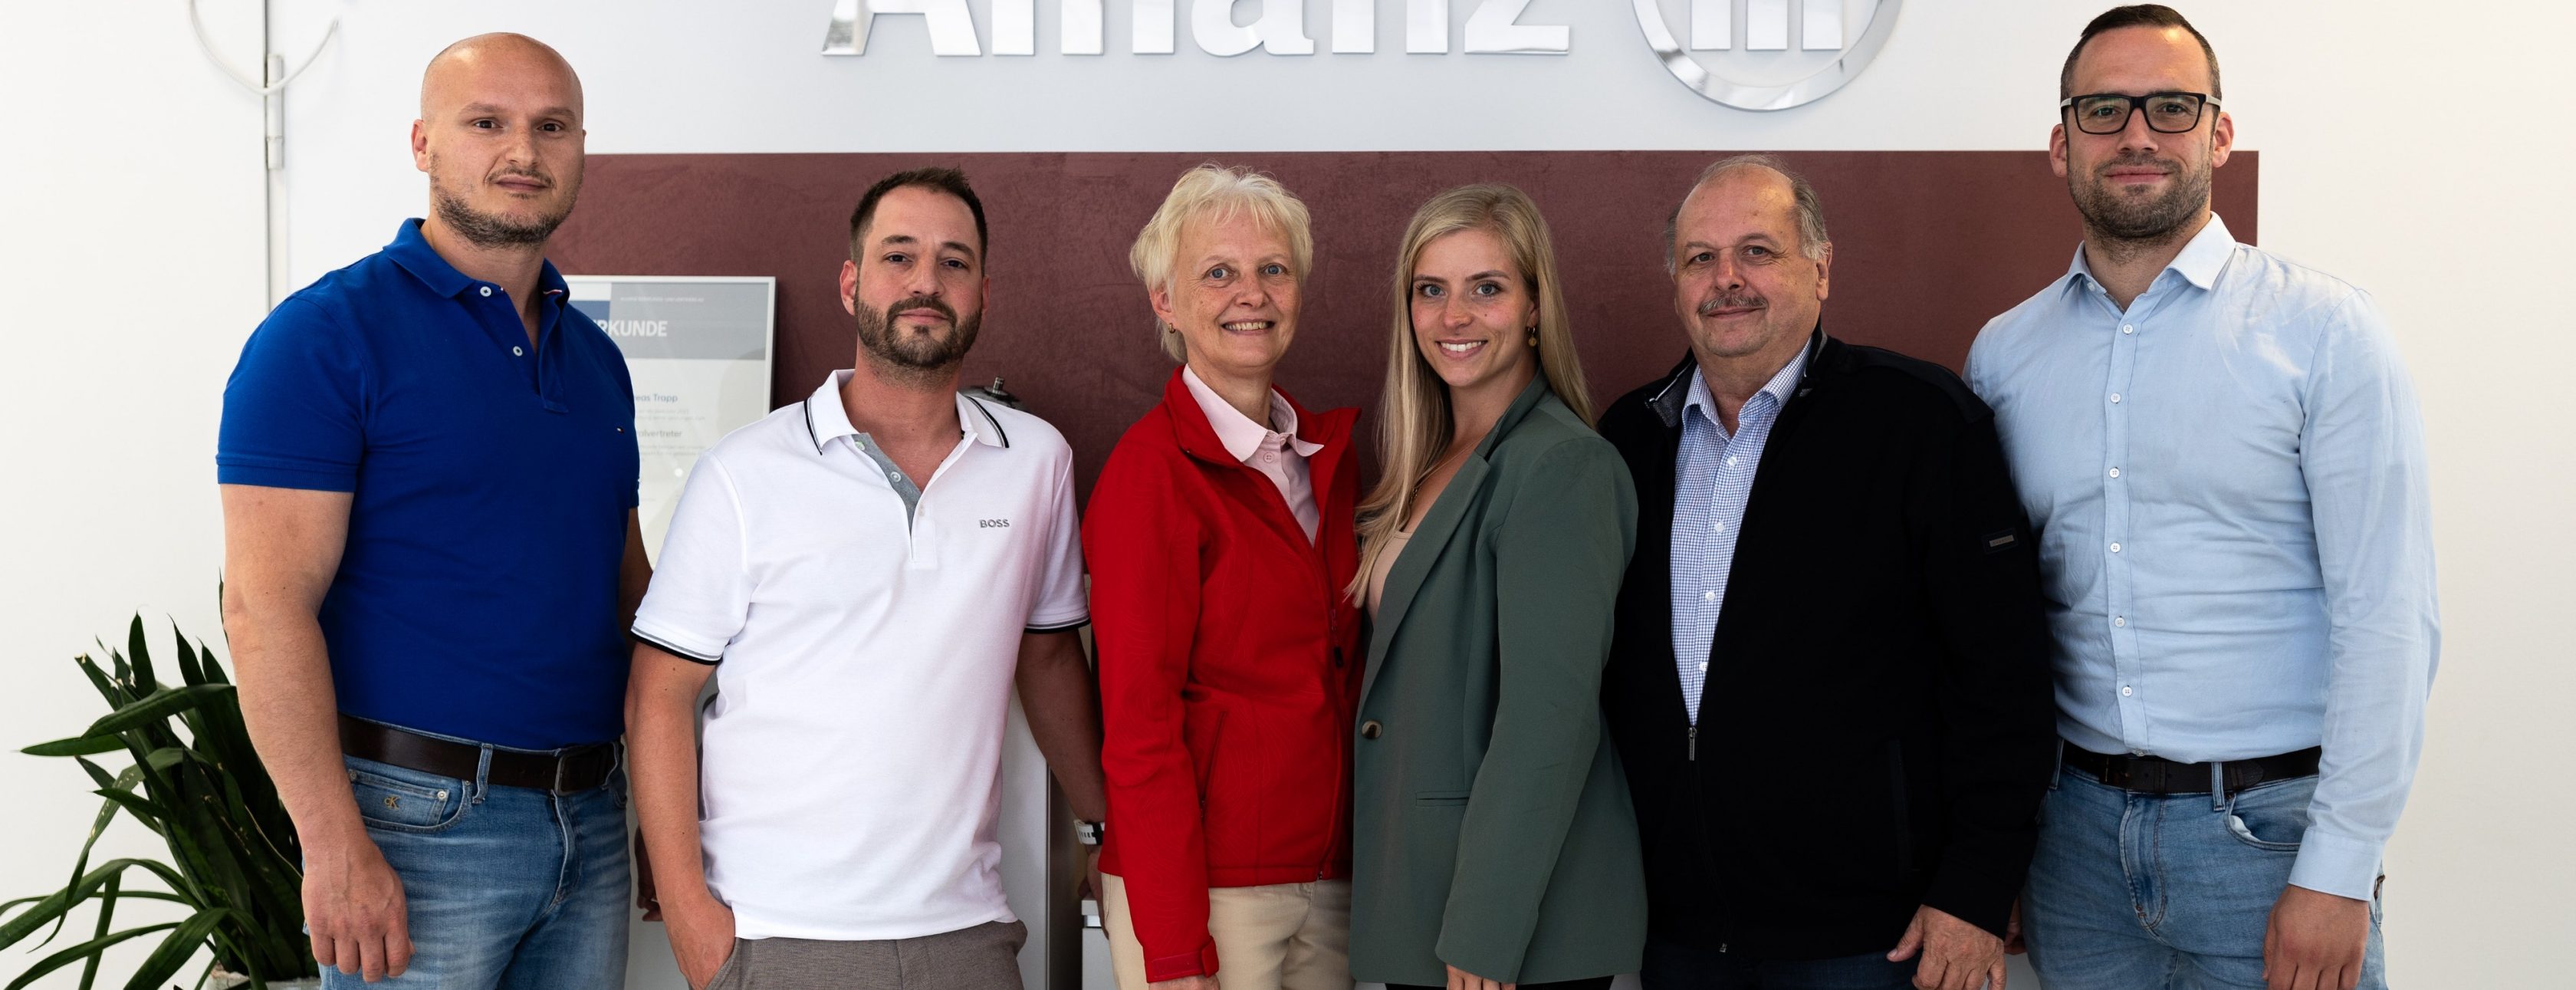 Allianz Versicherung Andreas Trapp Olpe - Kfz Auto Baufinanzierung Tierkranken Zinsen Zahn 